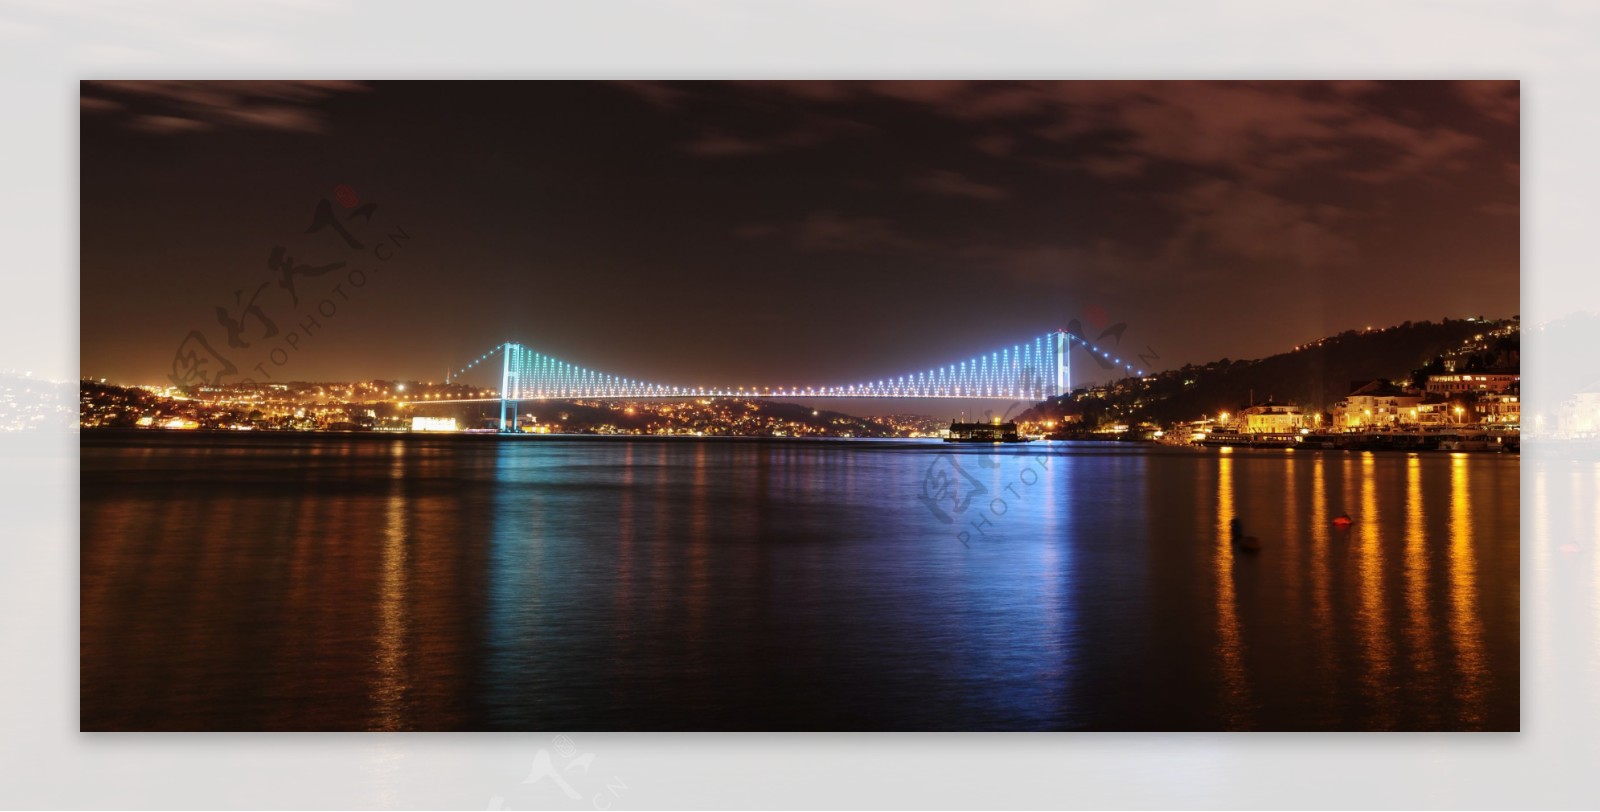 夜晚的跨江大桥美景